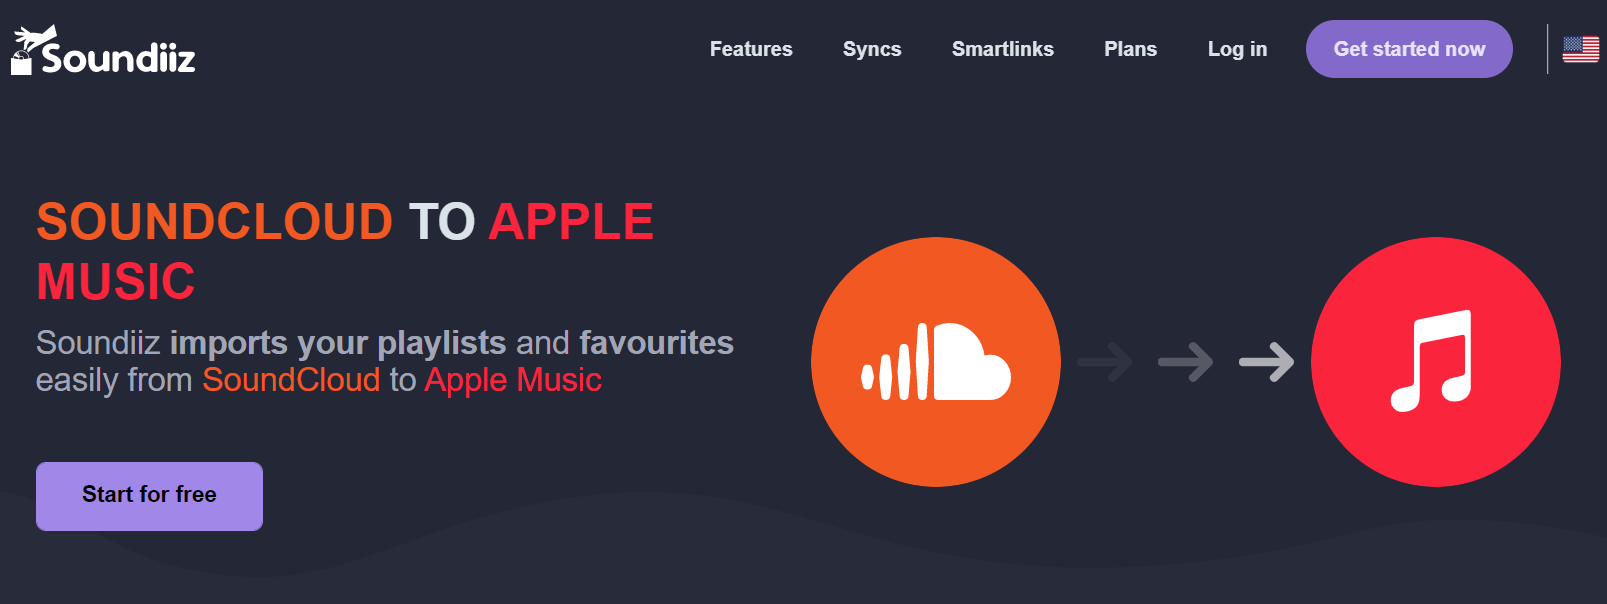 Soundiiz Soundcloud zu Apple Music